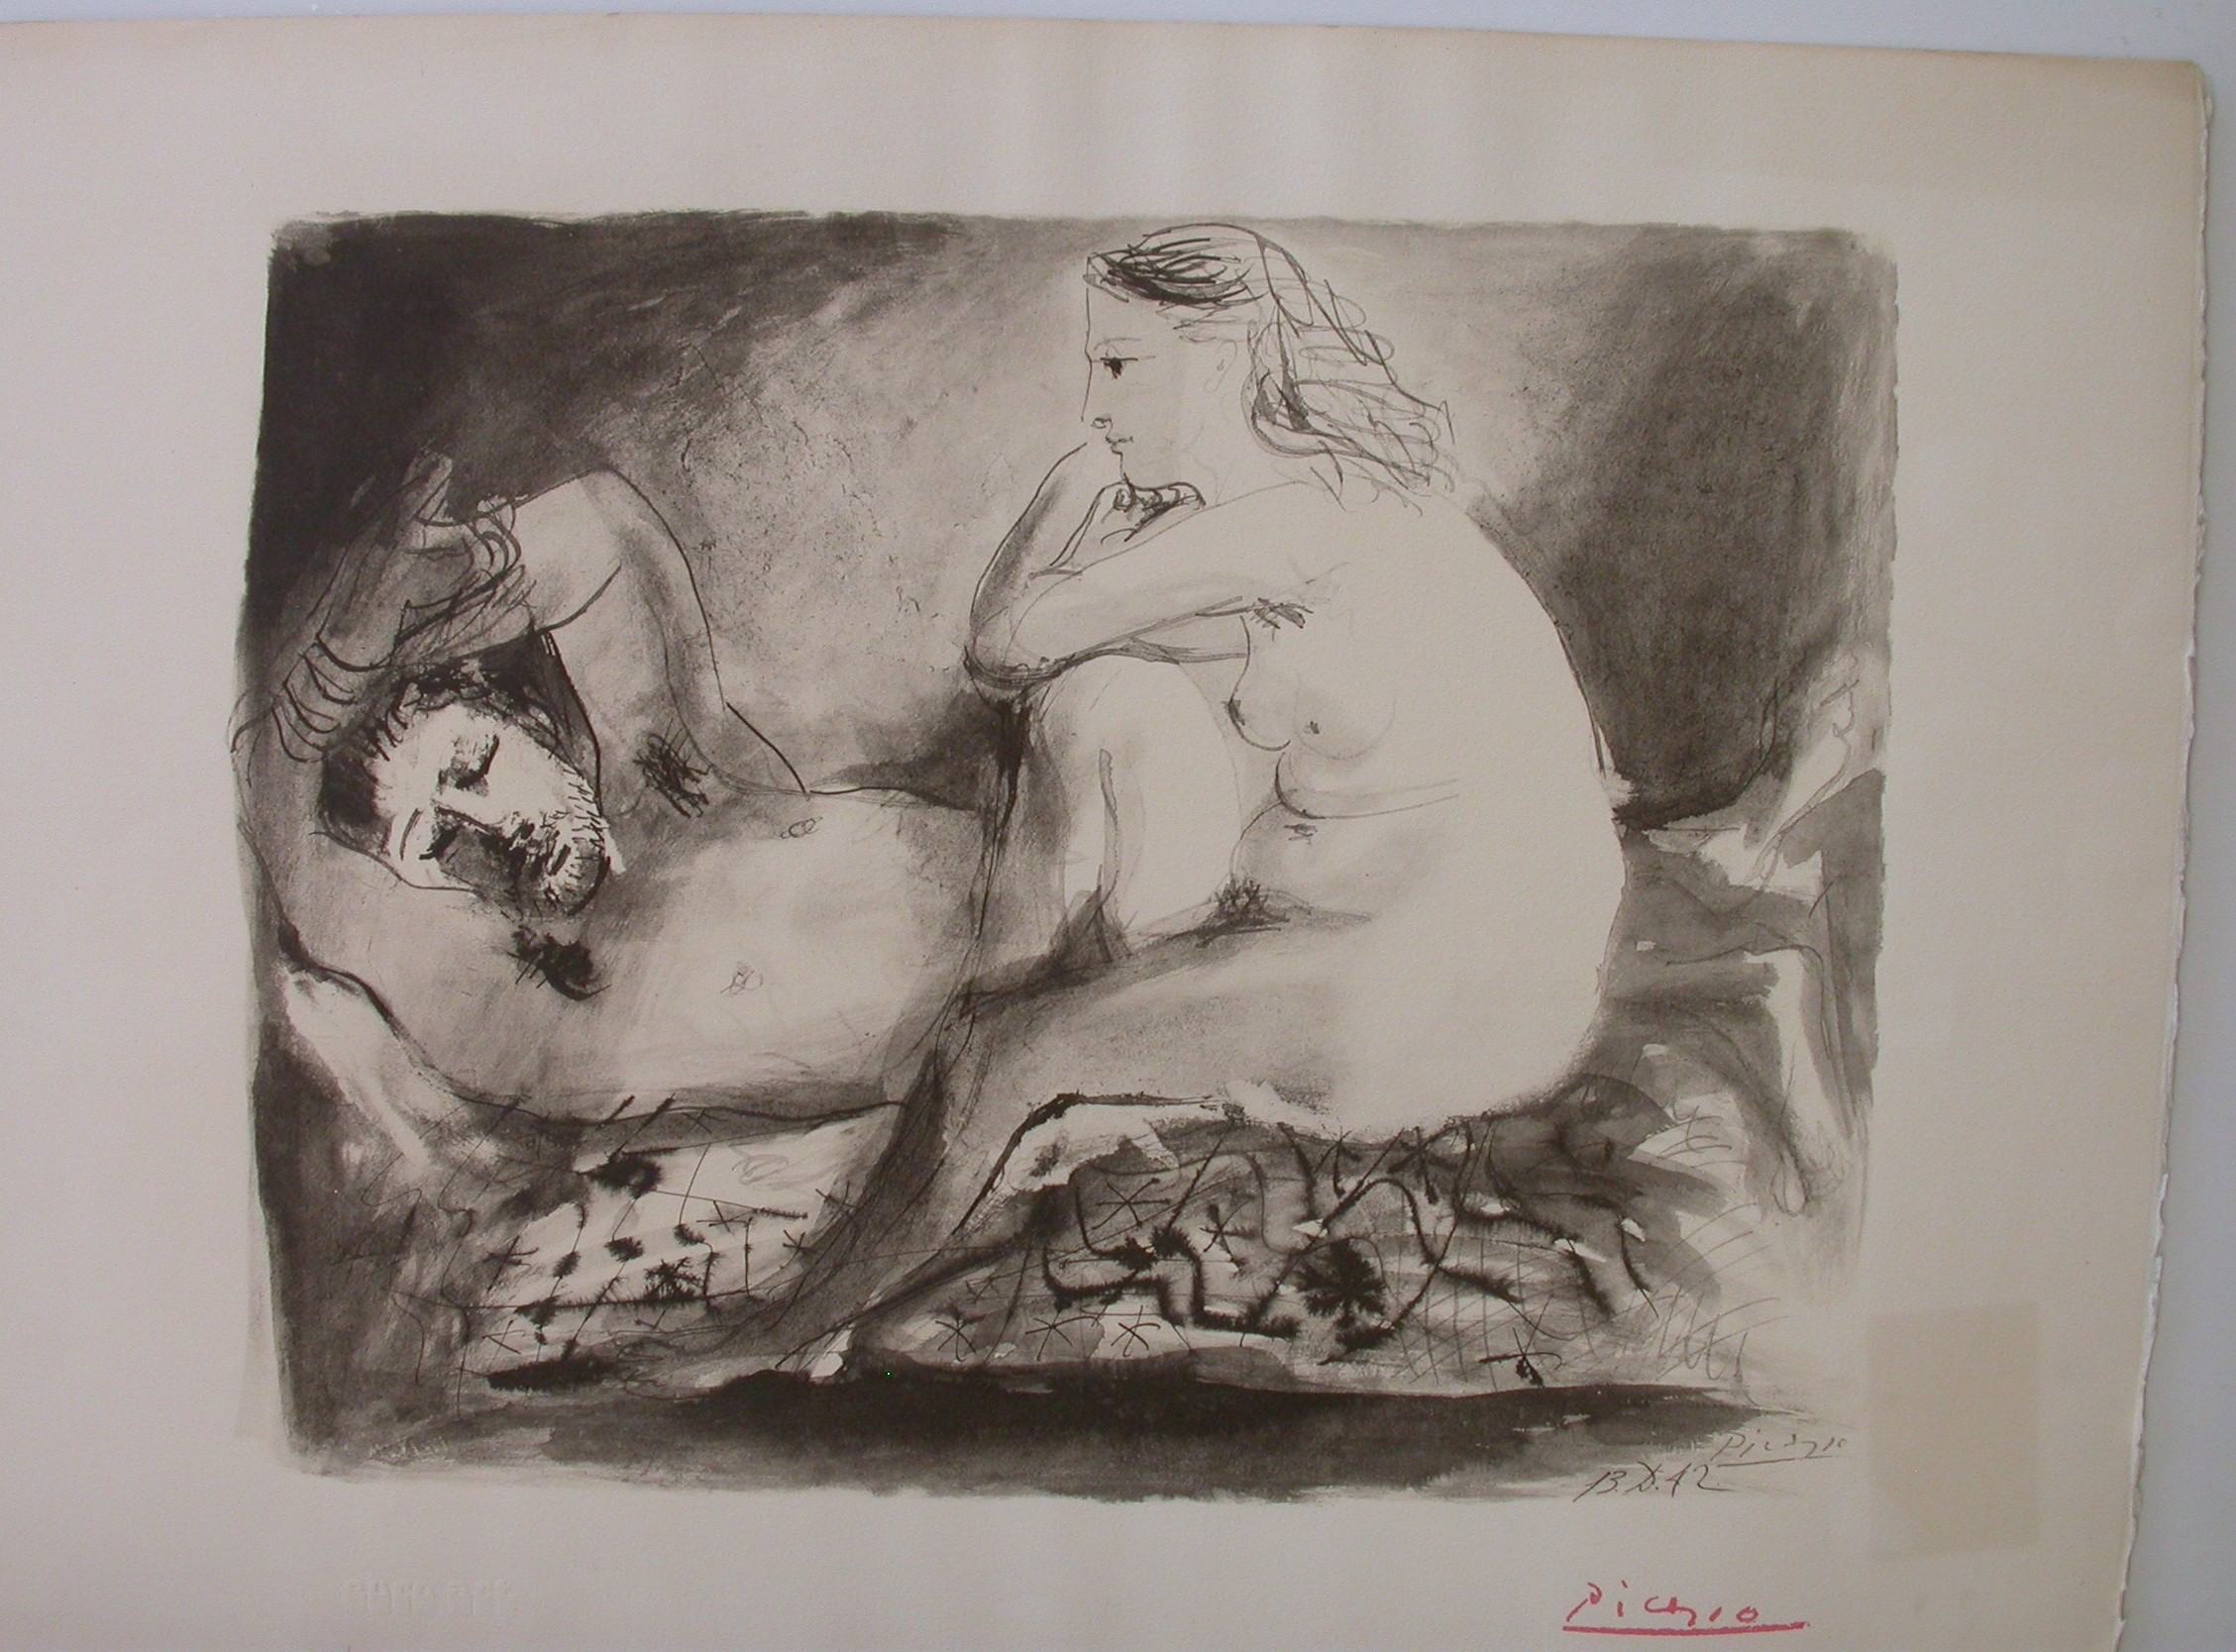 Picasso (1881 - 1973) "Le Dormeur"